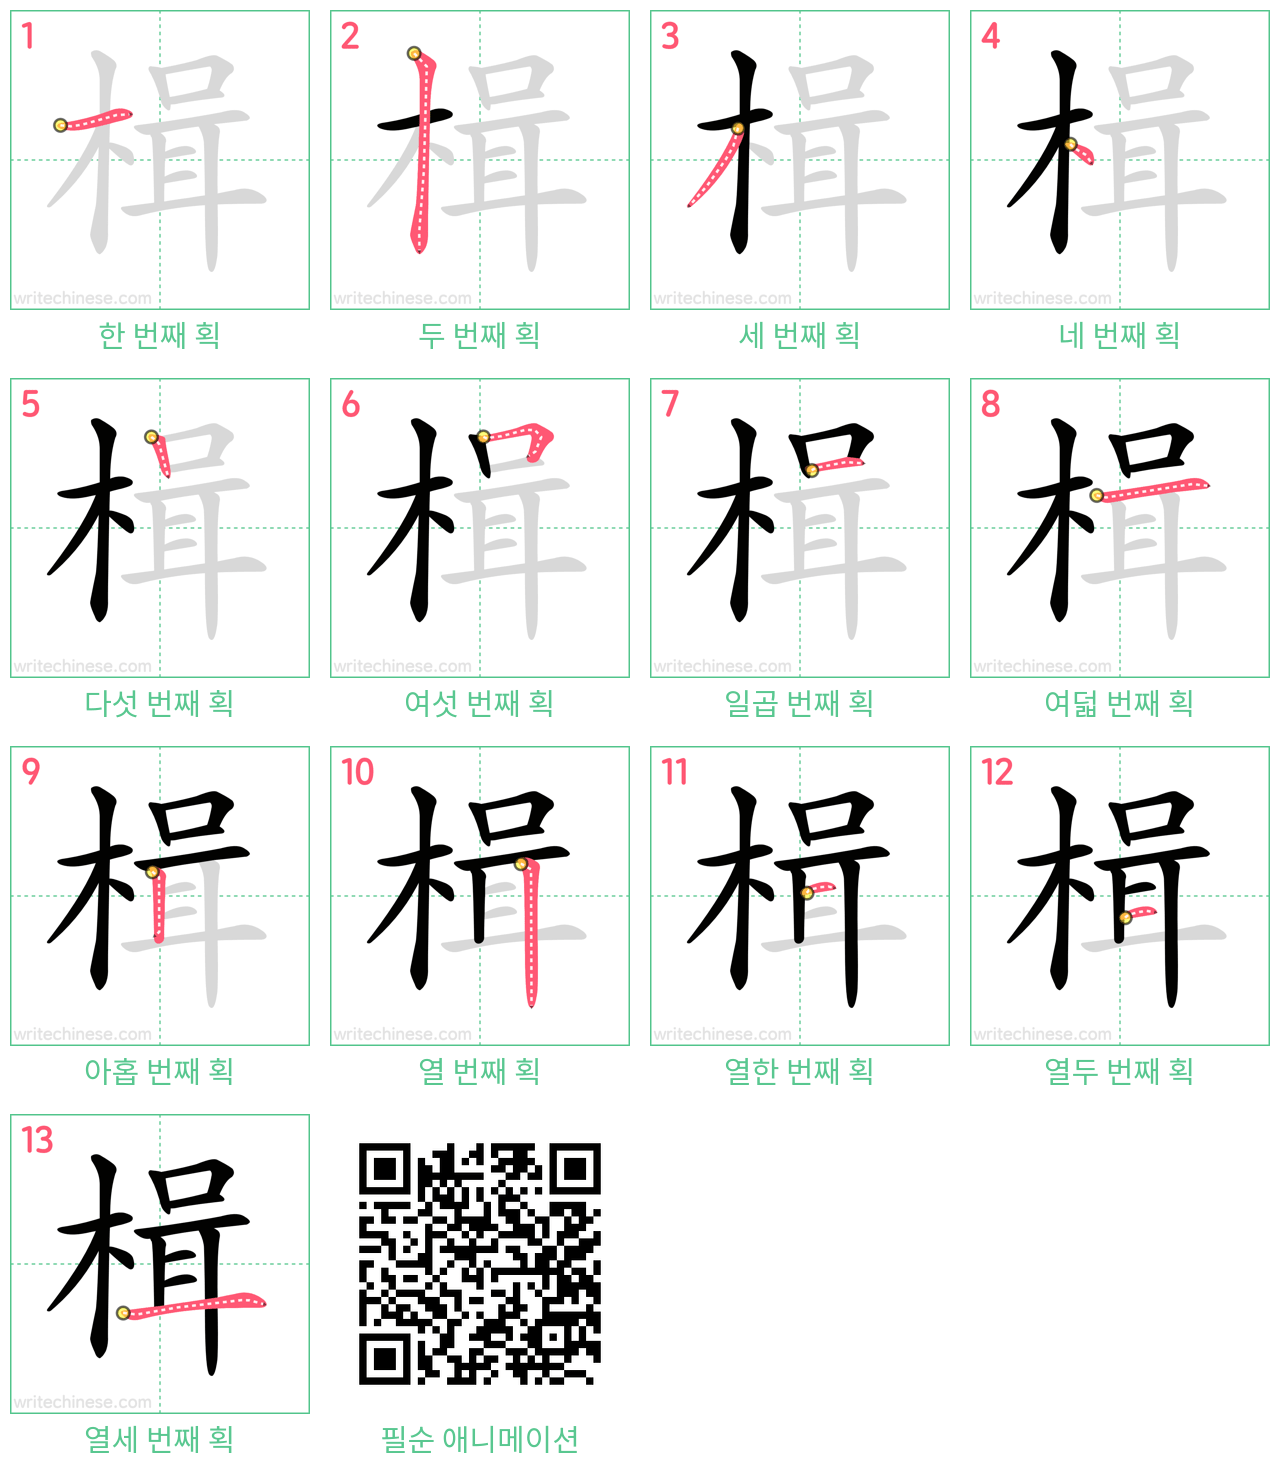 楫 step-by-step stroke order diagrams